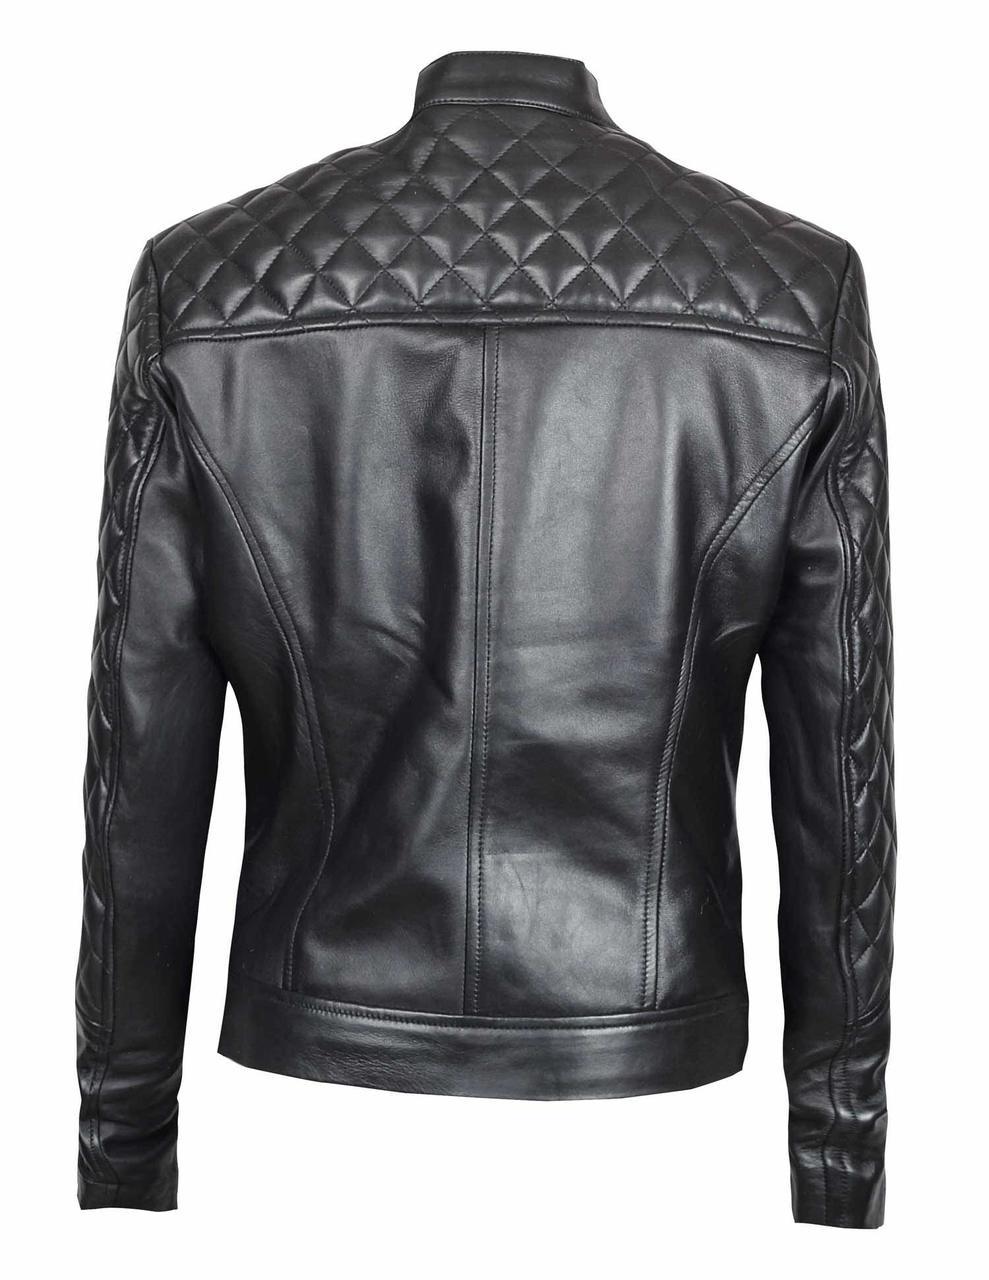 Ellen Women's Black Quilted Cafe Racer Leather Jacket